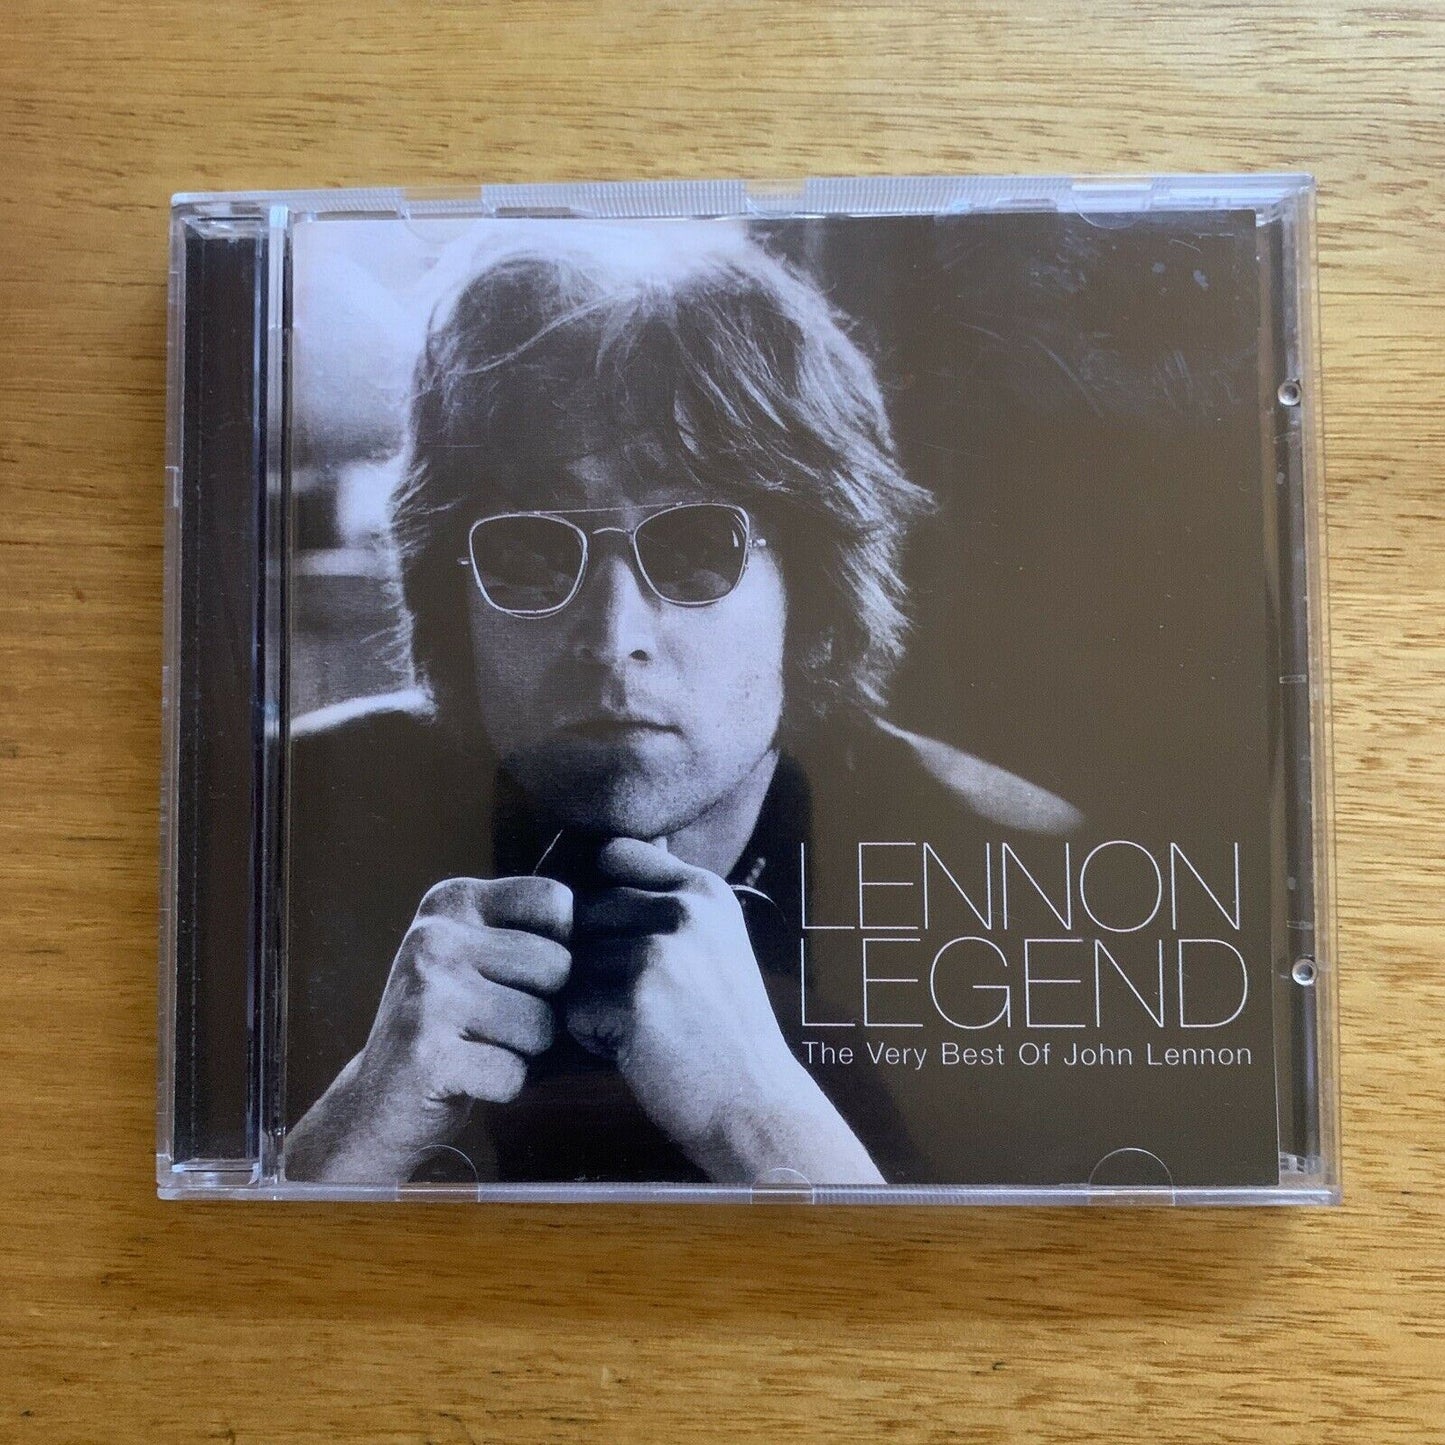 Lennon Legend: The Very Best of John Lennon by John Lennon (CD) Greatest Hits